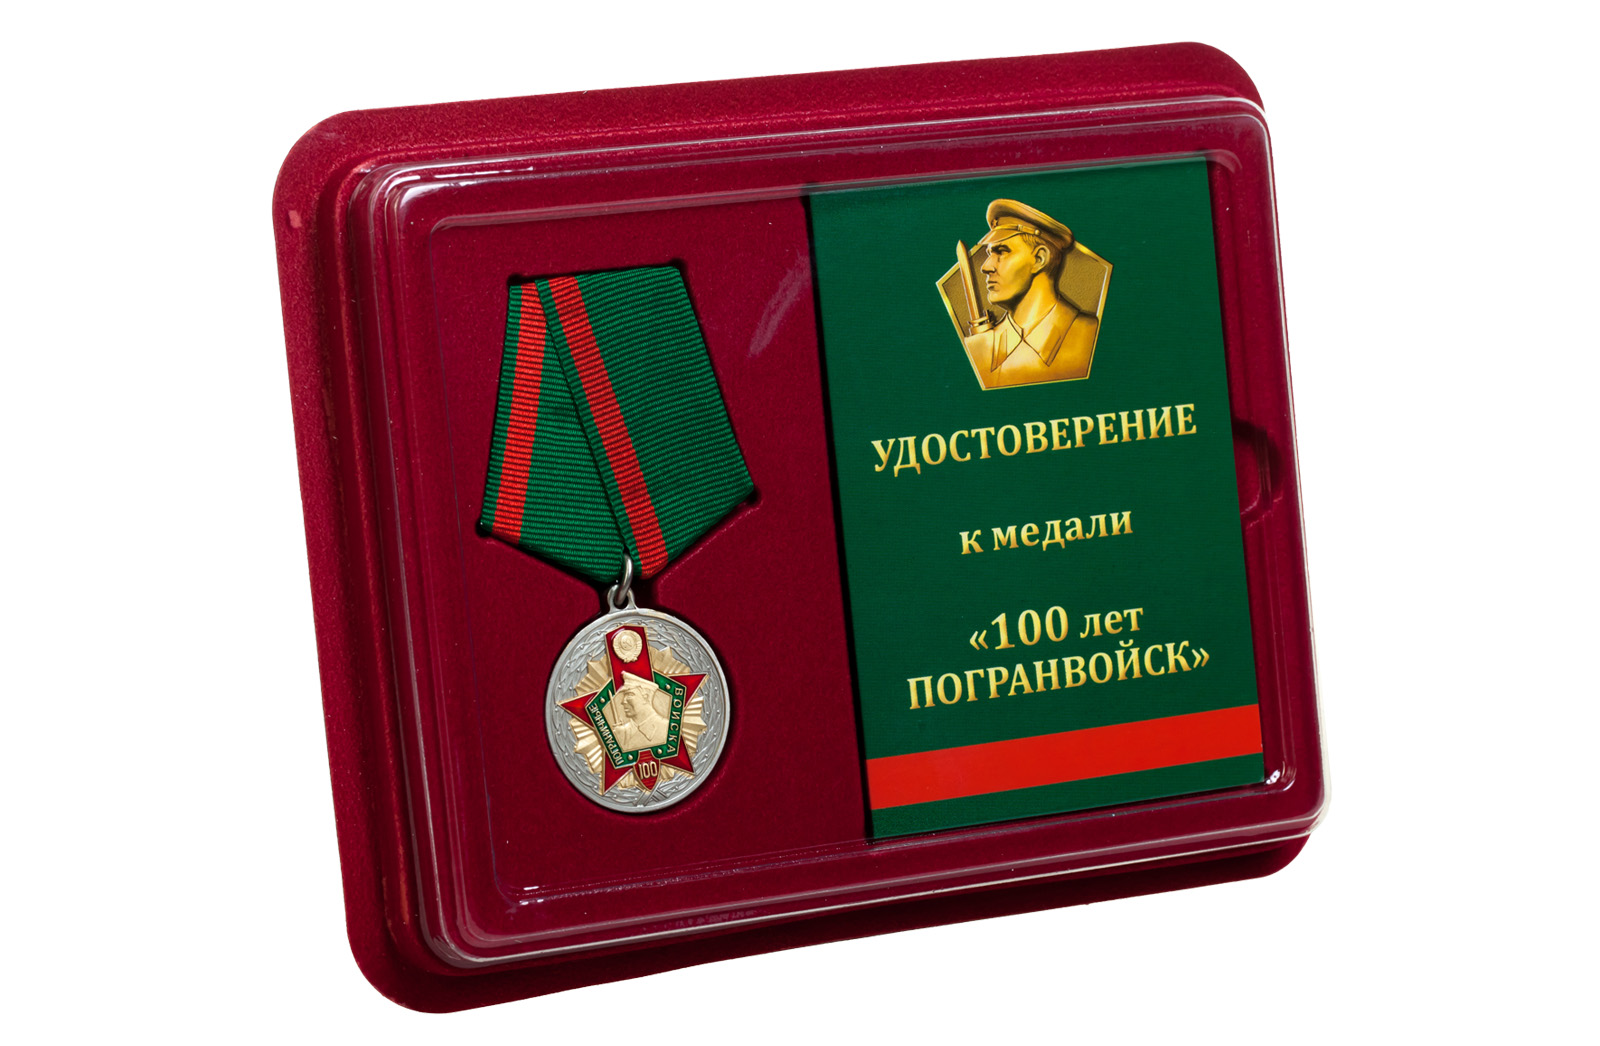 Купить медаль к 100-летию Пограничных войск оптом или в розницу